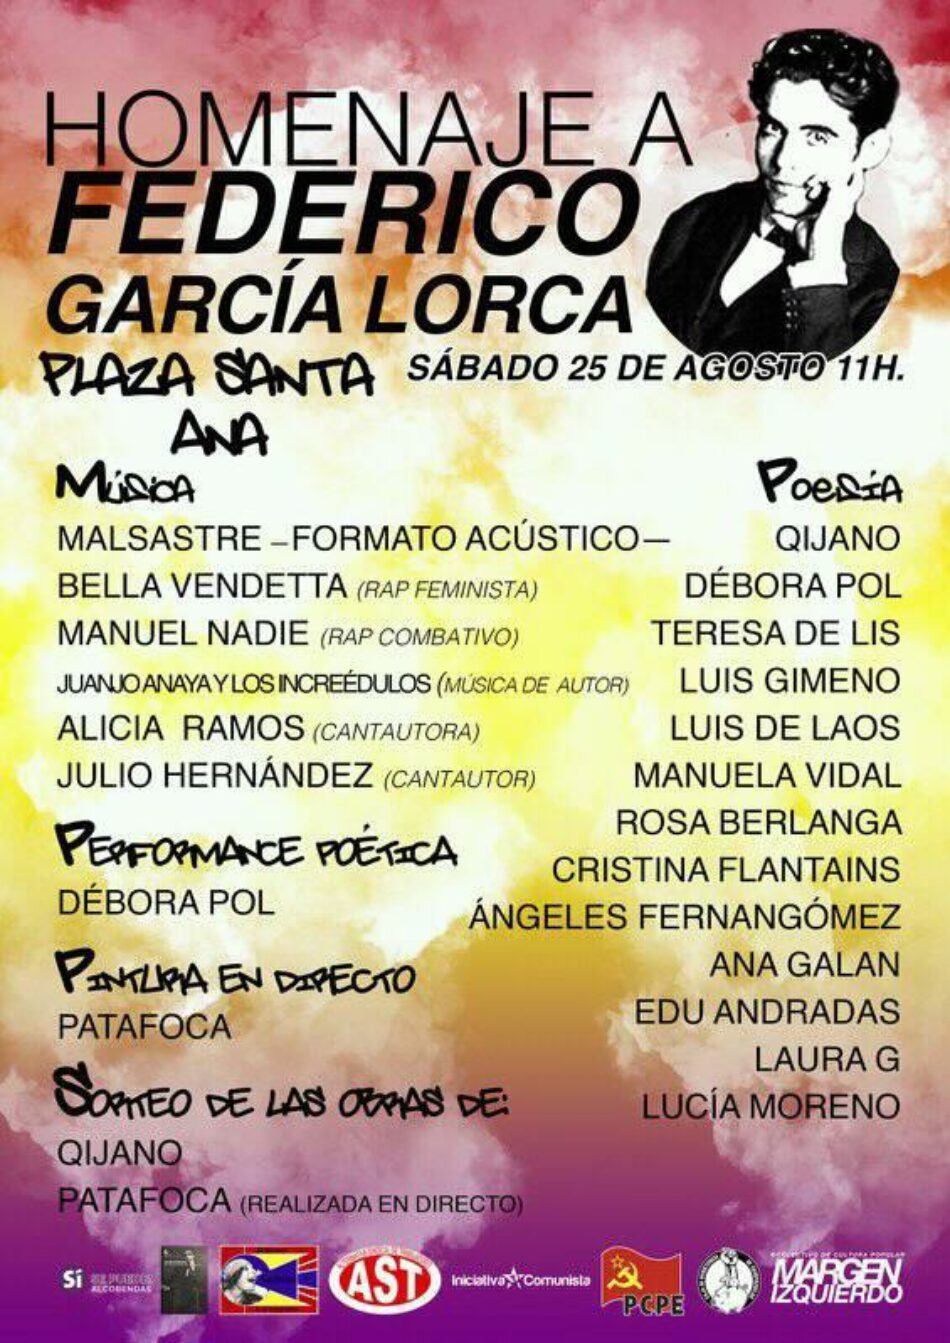 Homenaje a Federico García Lorca en Madrid. 25 de Agosto